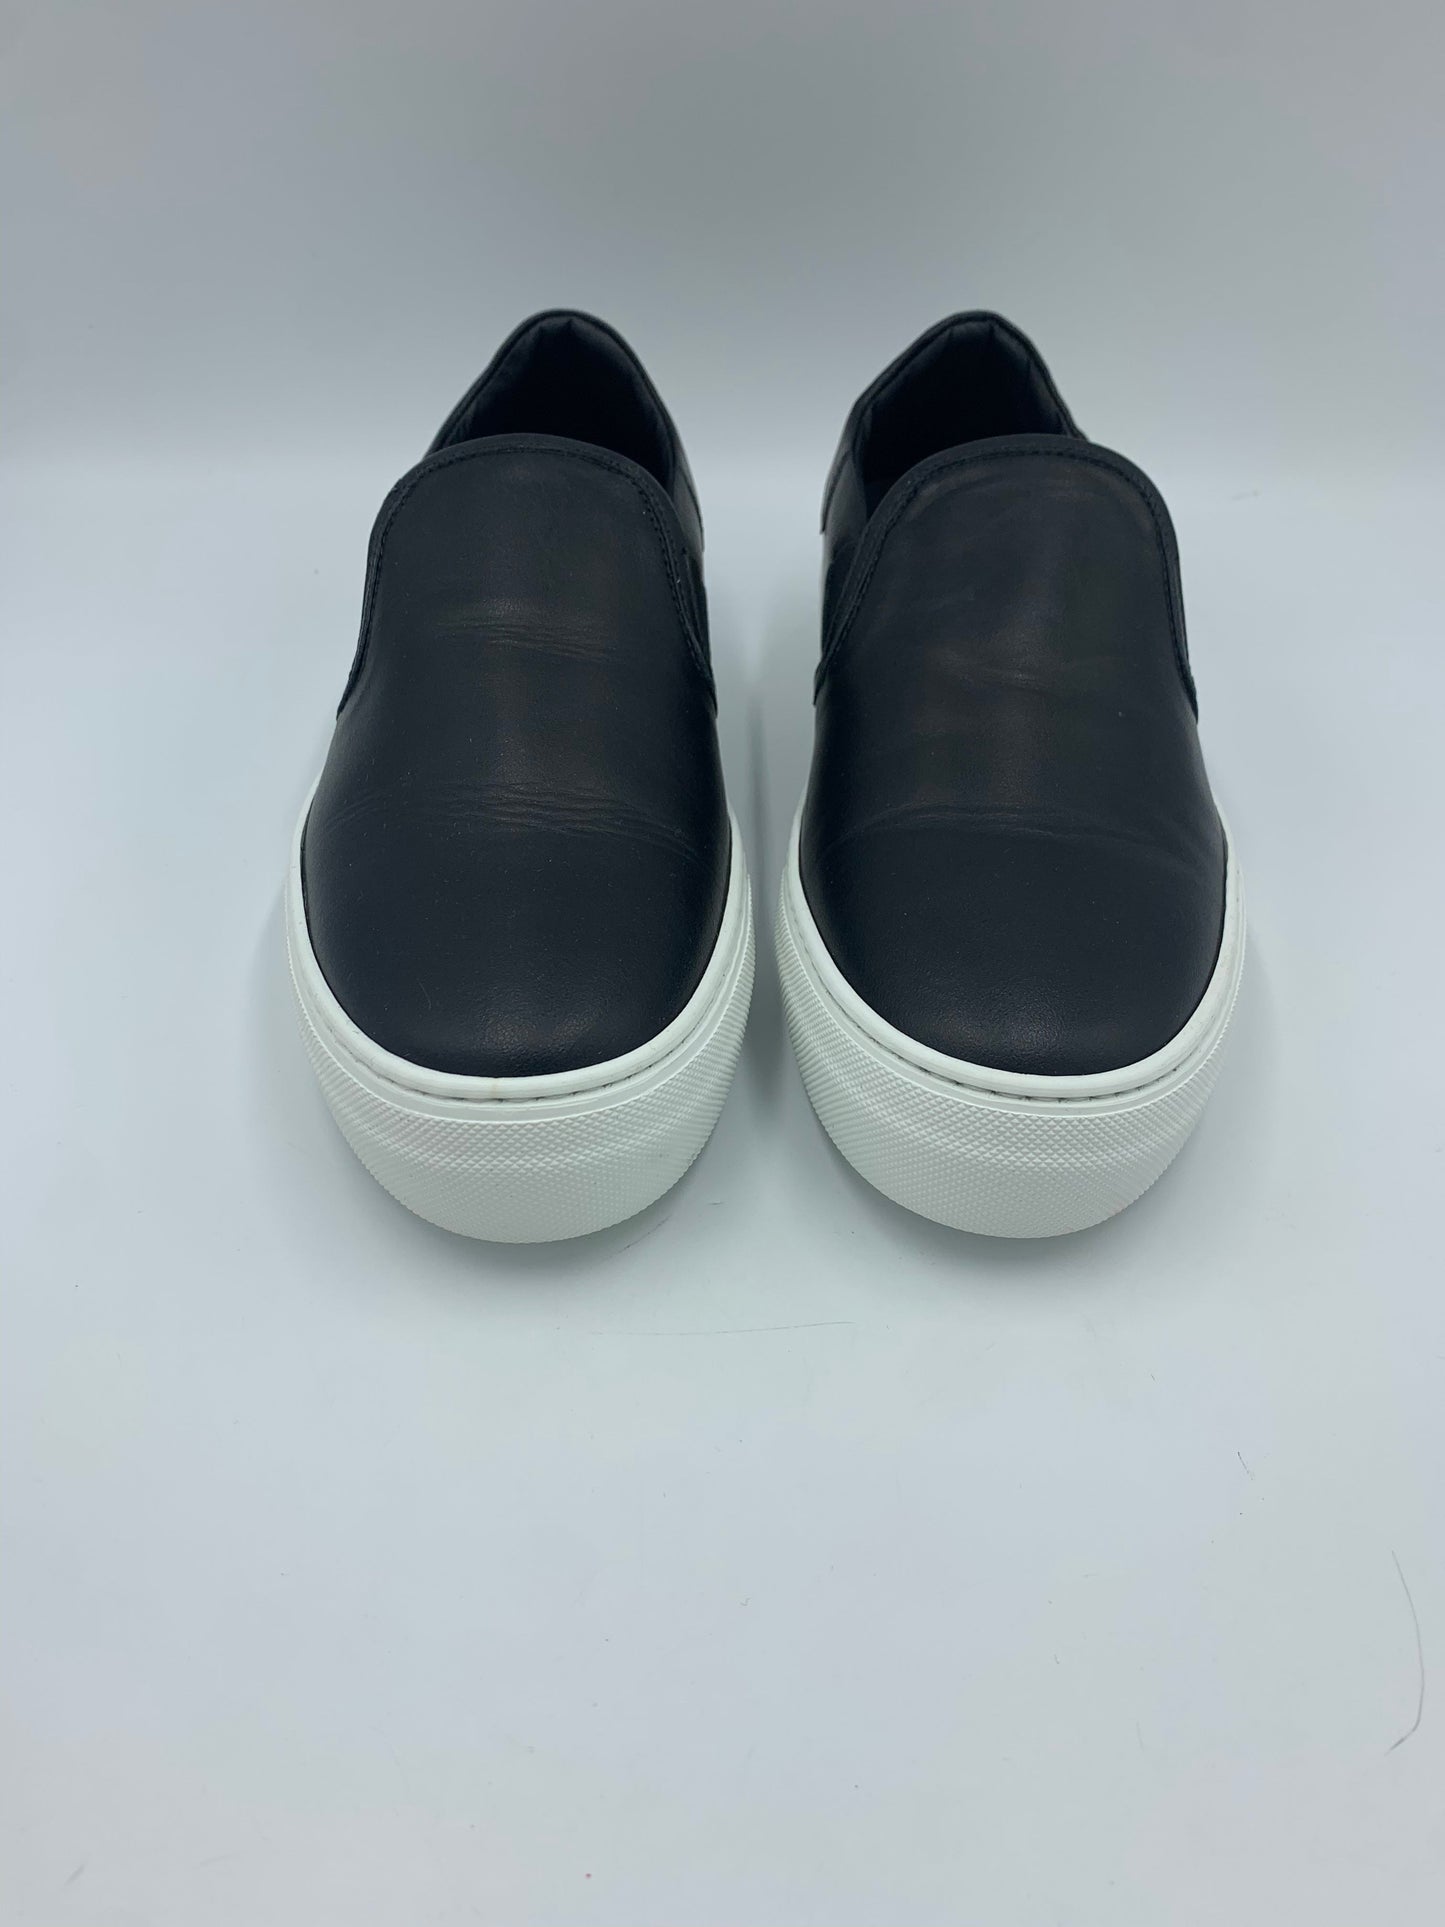 Black Shoes Sneakers LITA by Ciara Size 7.5